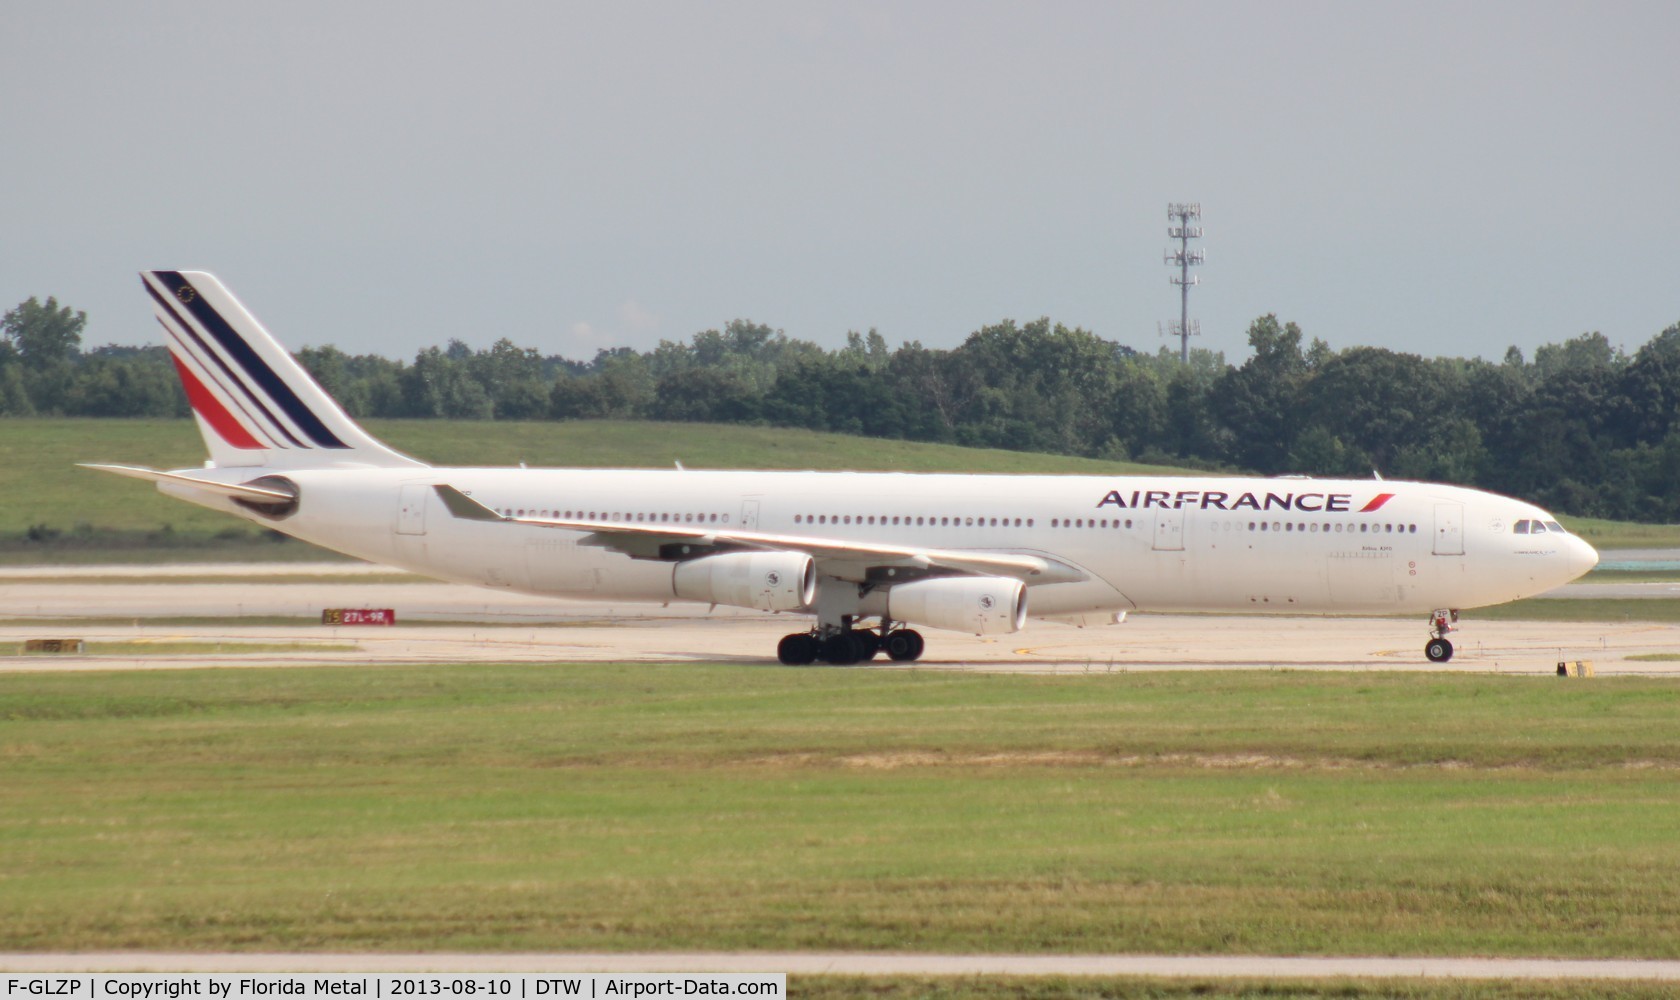 F-GLZP, 1999 Airbus A340-313X C/N 260, Air France A340-300